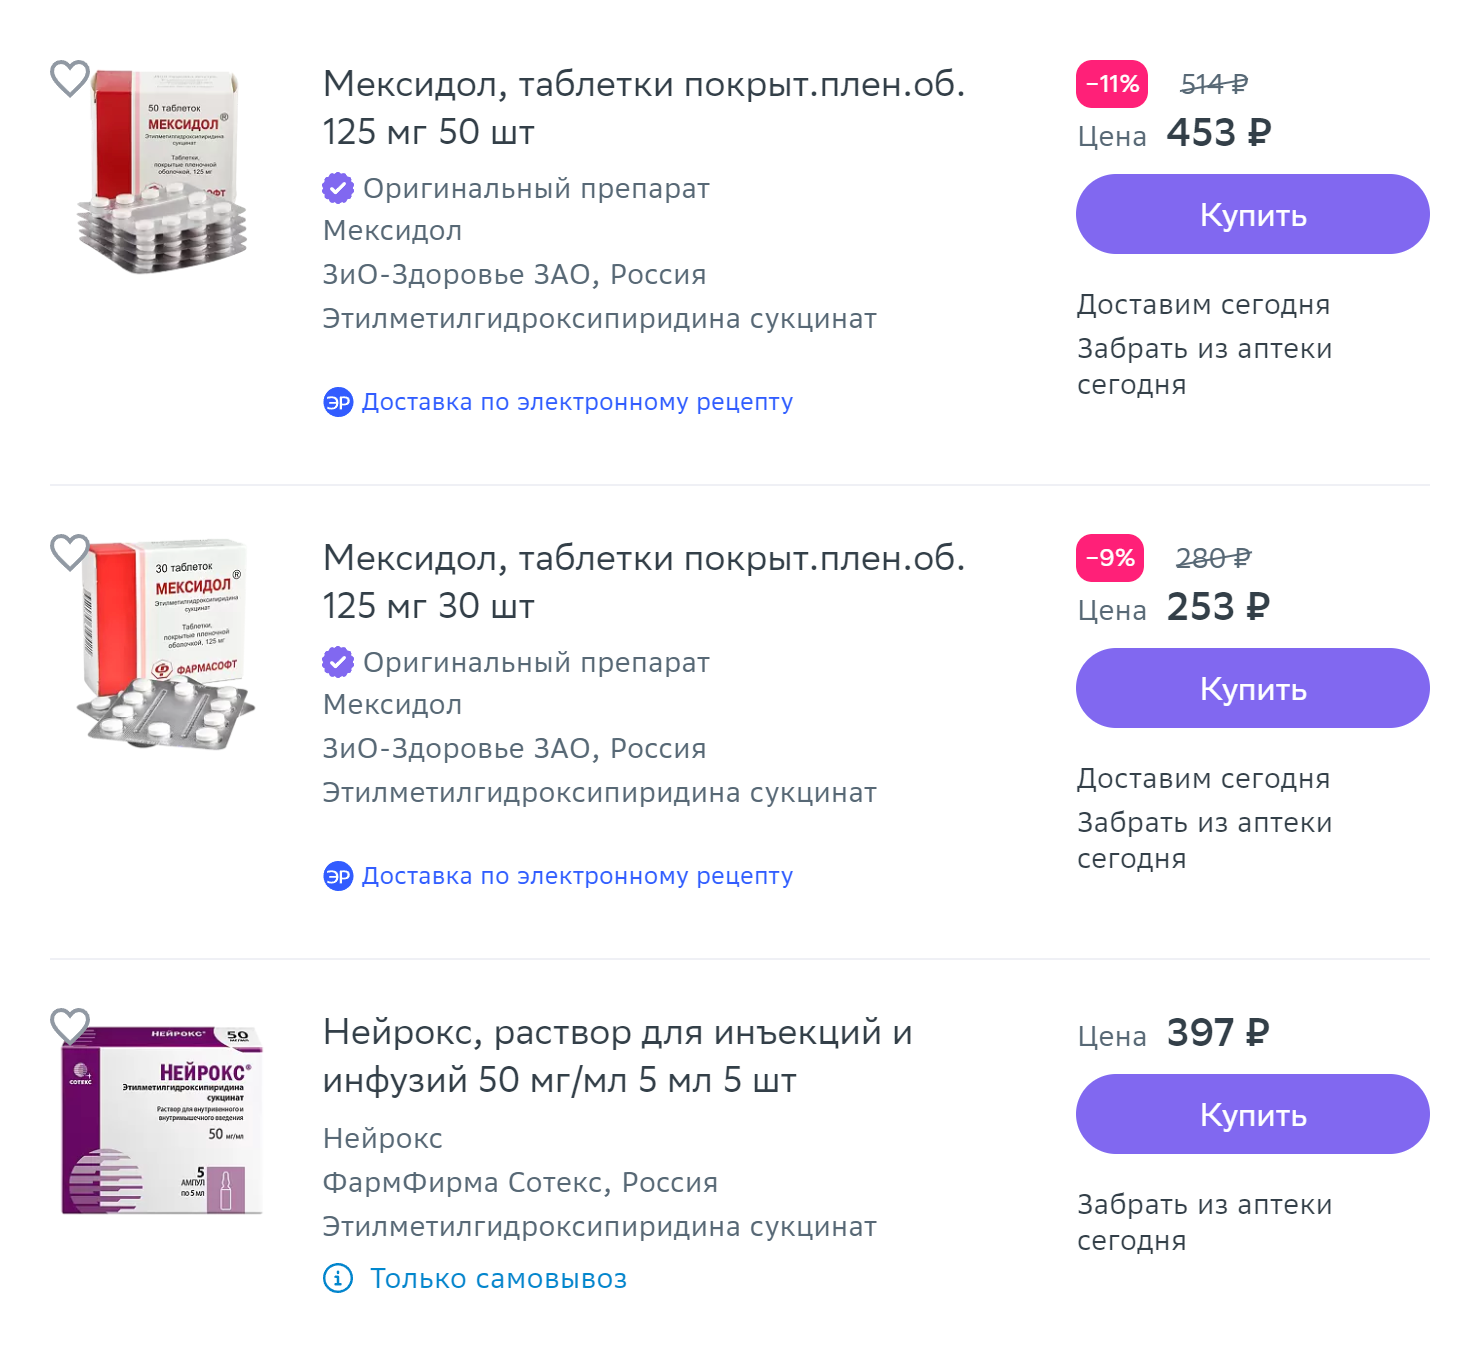 В аптеках огромный выбор средств с этилметилгидроксипиридина сукцинатом. Ни одно из них не эффективно. Источник: eapteka.ru